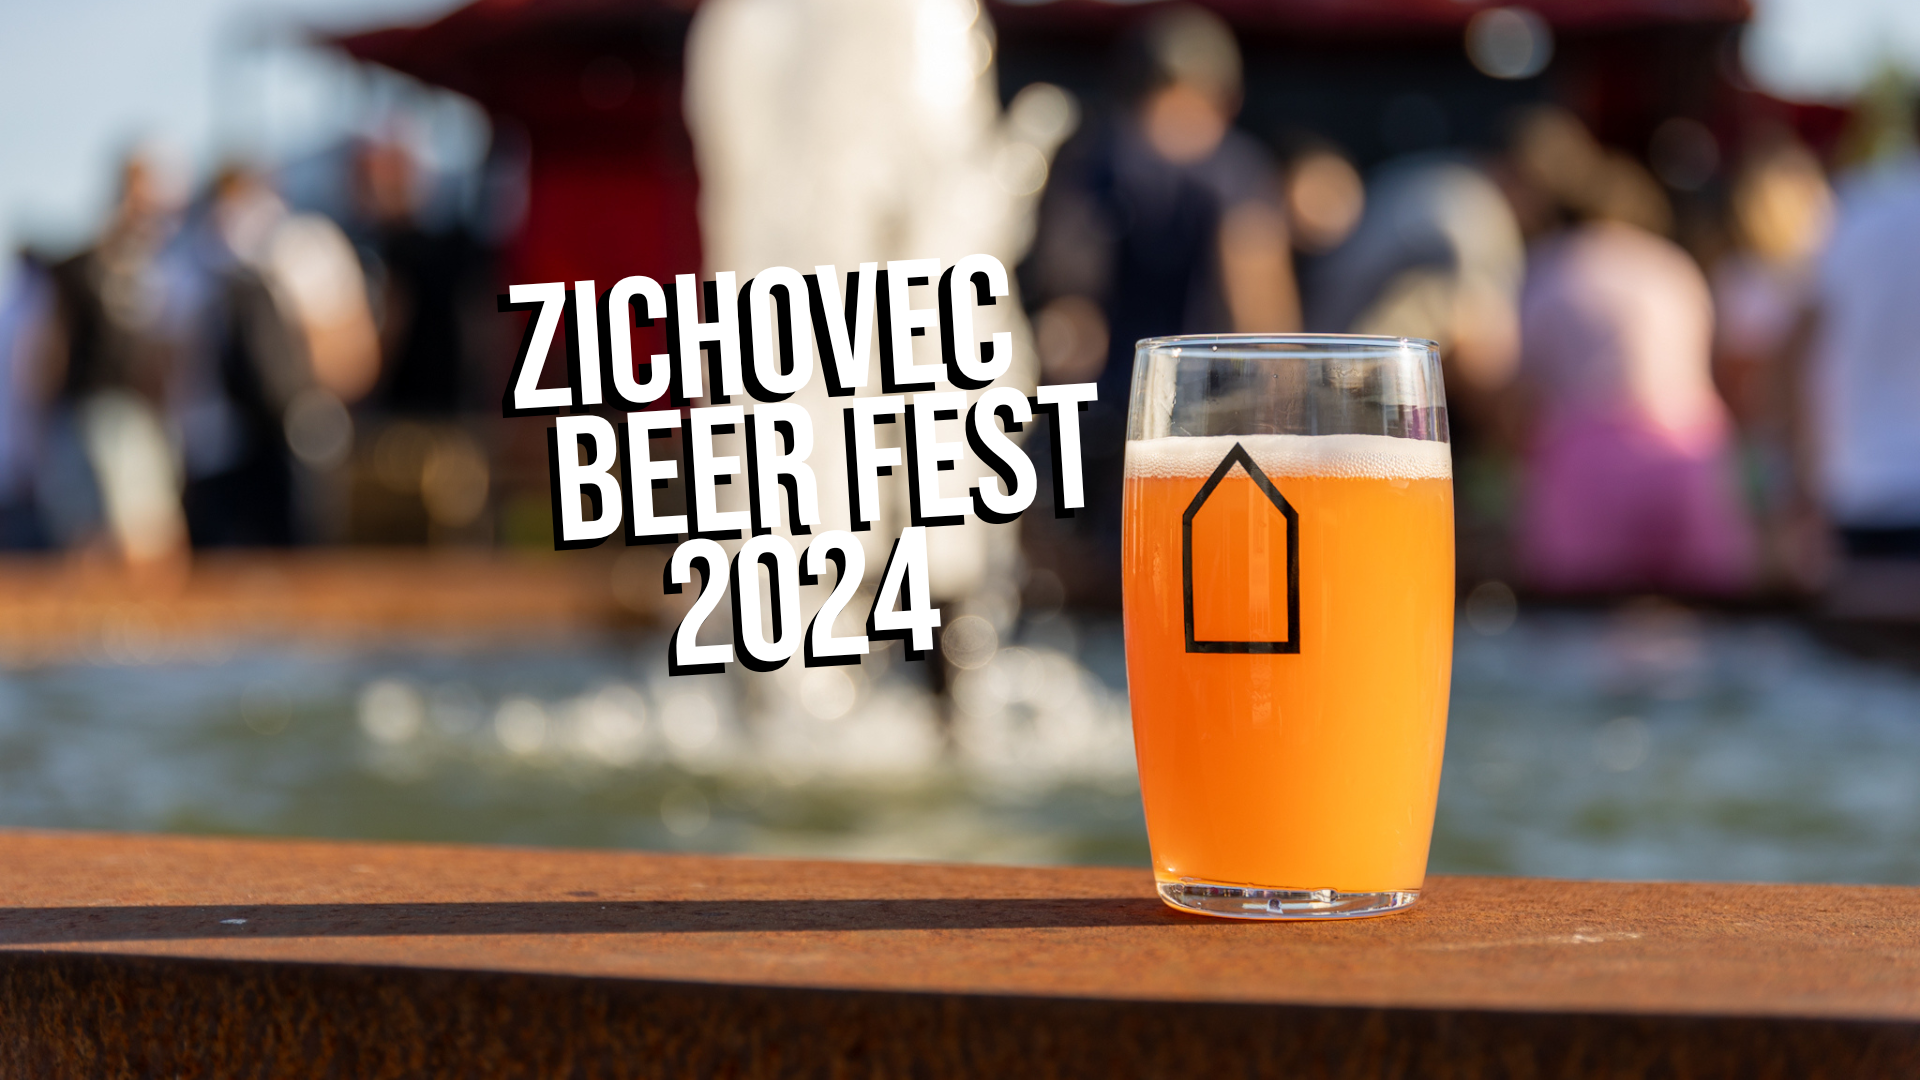 beerfest 2024 » Pivovar Zichovec